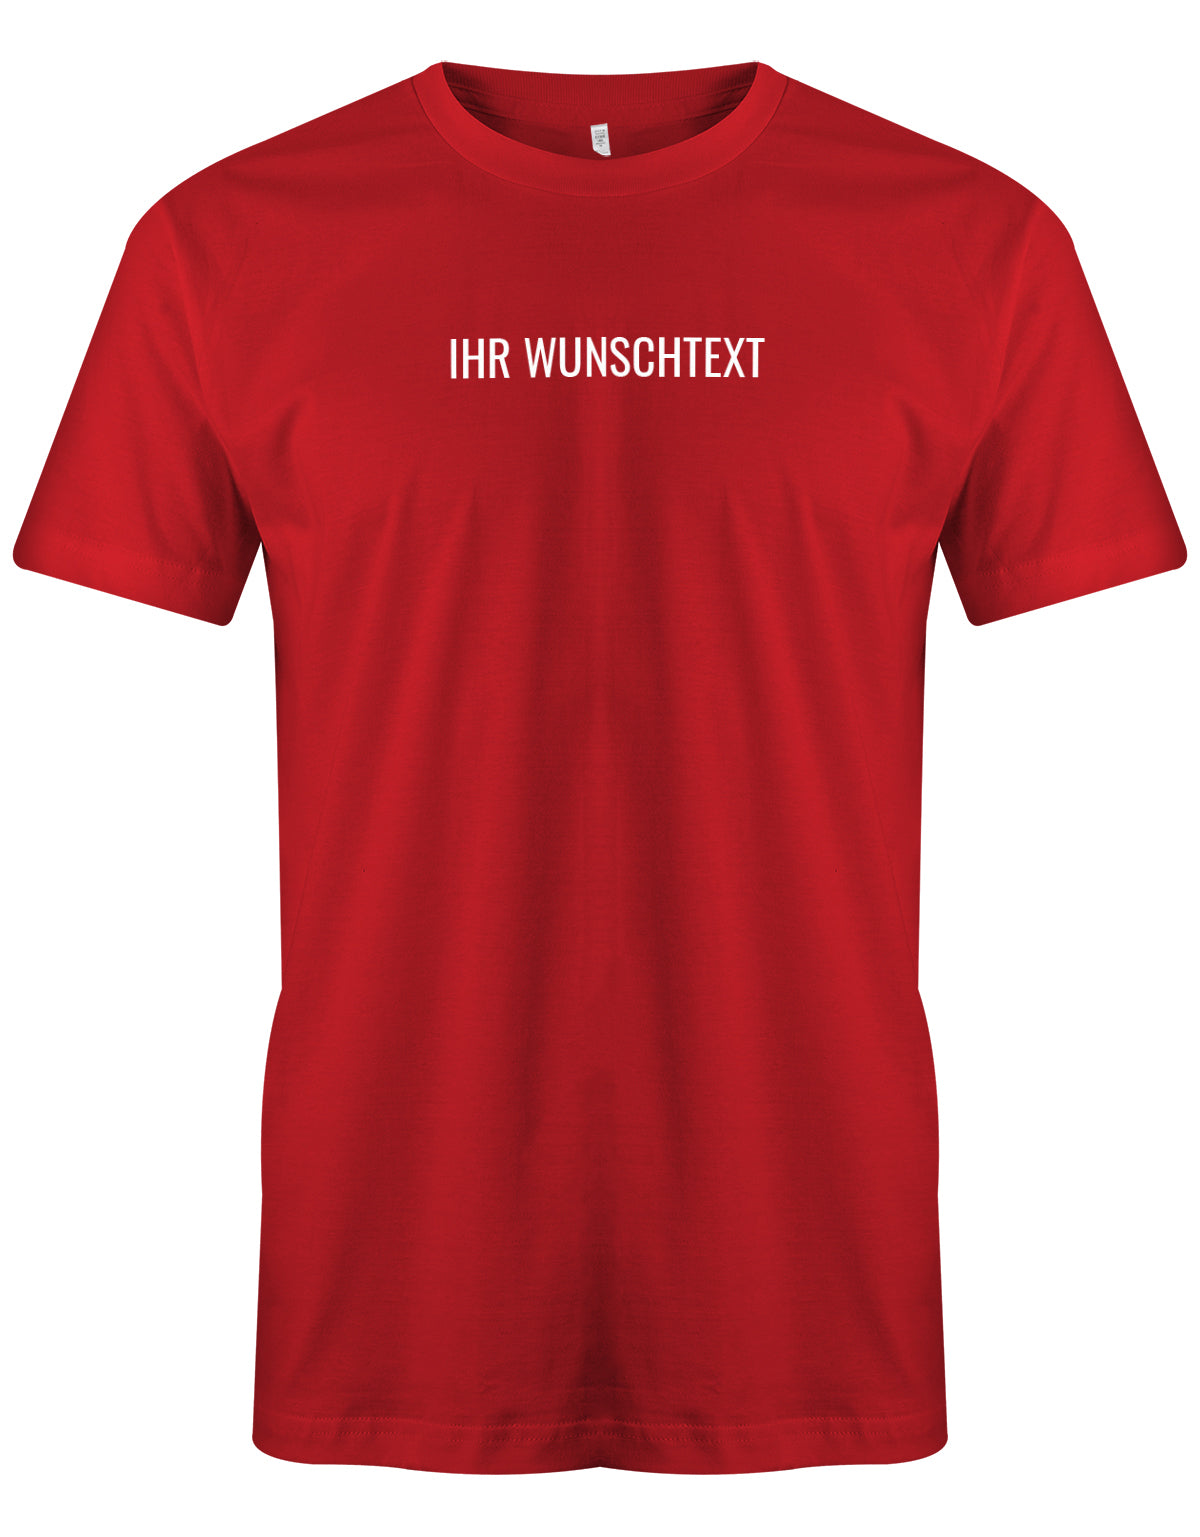 Männer Tshirt mit Wunschtext. Minimalistisches Design. Rot